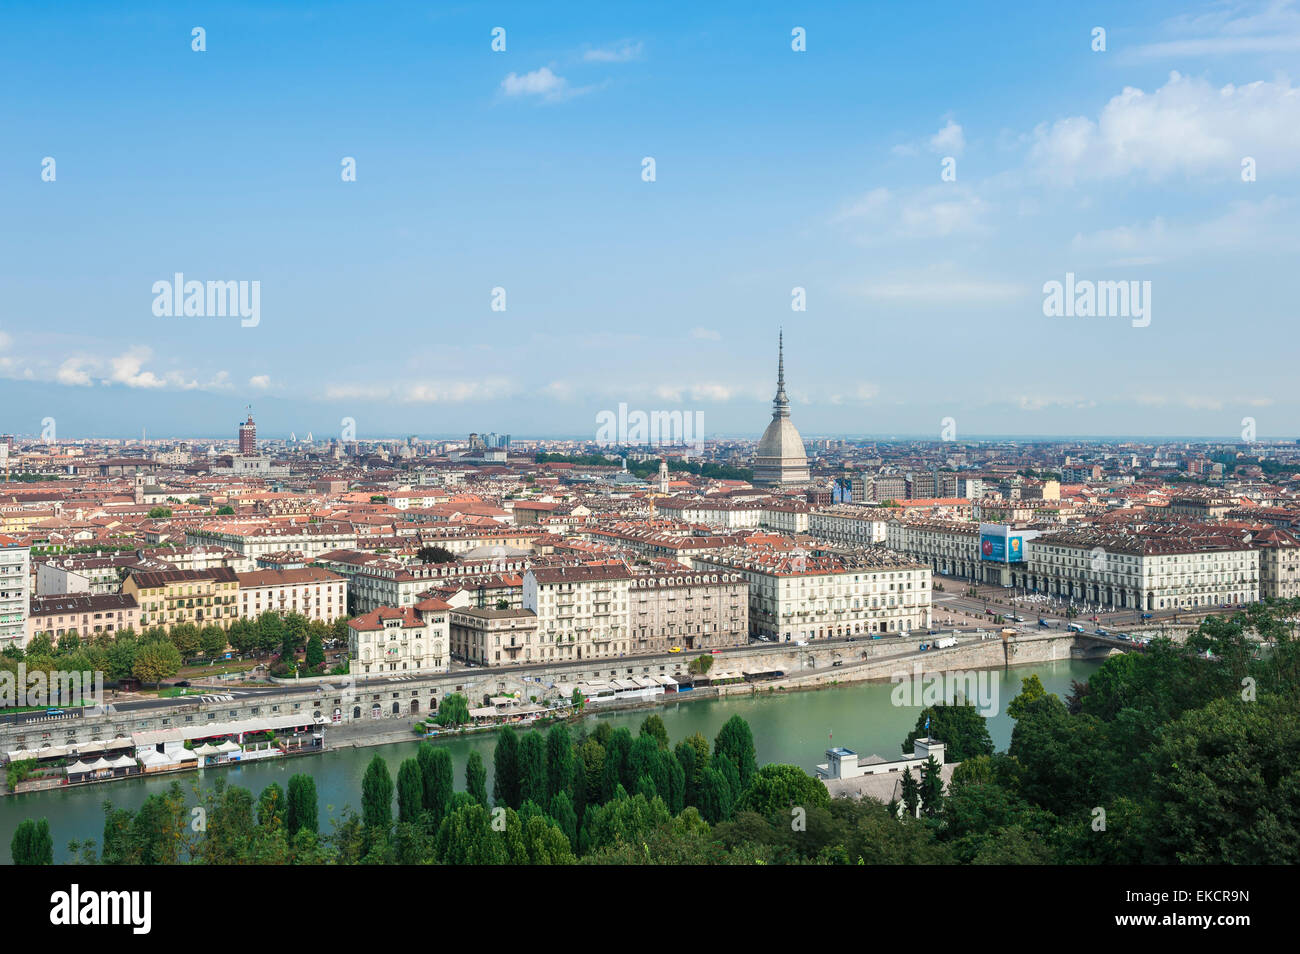 Turin Stadtbild, Luftaufnahme des Zentrums von Turin (Torino), die Mole Antonelliana Turm und das Ufer des Flusses Po, Piemont, Italien. Stockfoto